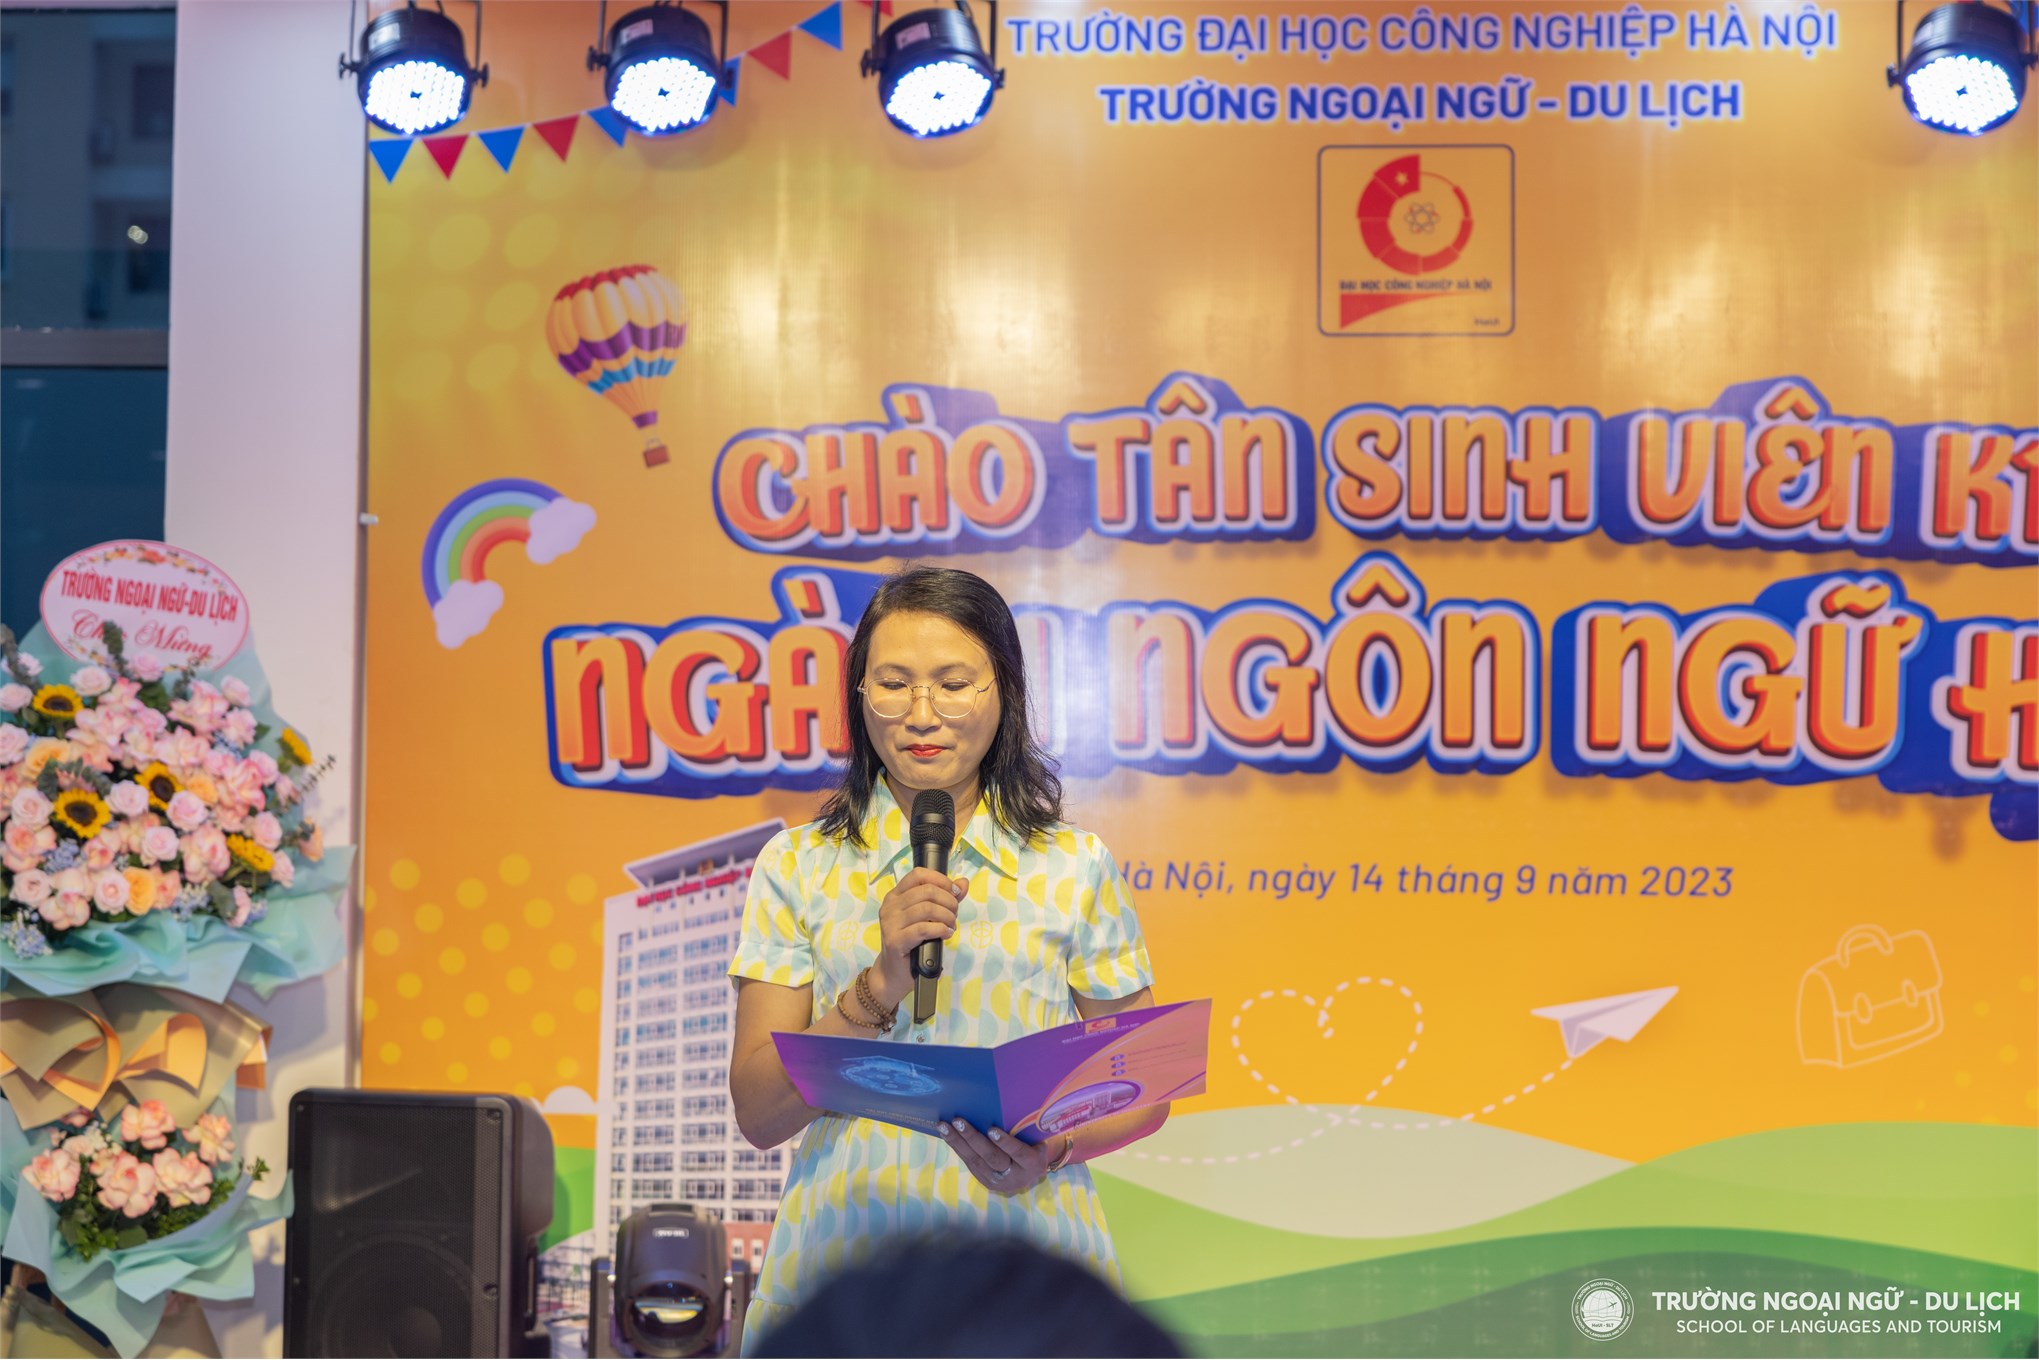 Chào đón những nhân tố đầu tiên ngành Ngôn ngữ học, Khoa Tiếng Việt và Văn hoá Việt Nam, Trường Ngoại ngữ - Du lịch, Trường Đại học Công nghiệp Hà Nội